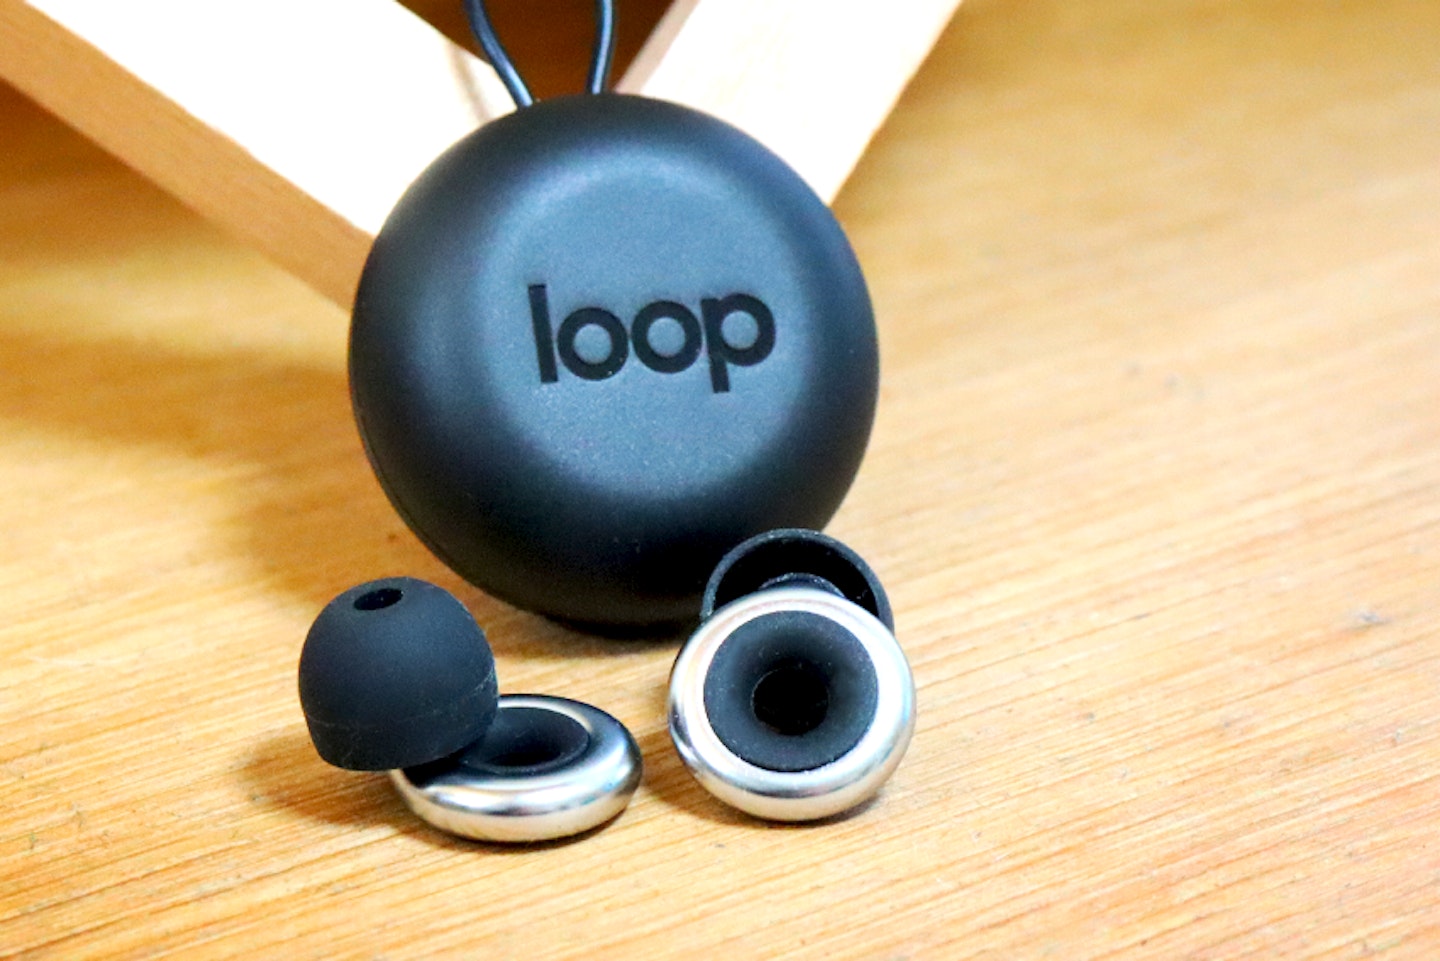  Loop: Loop Experience